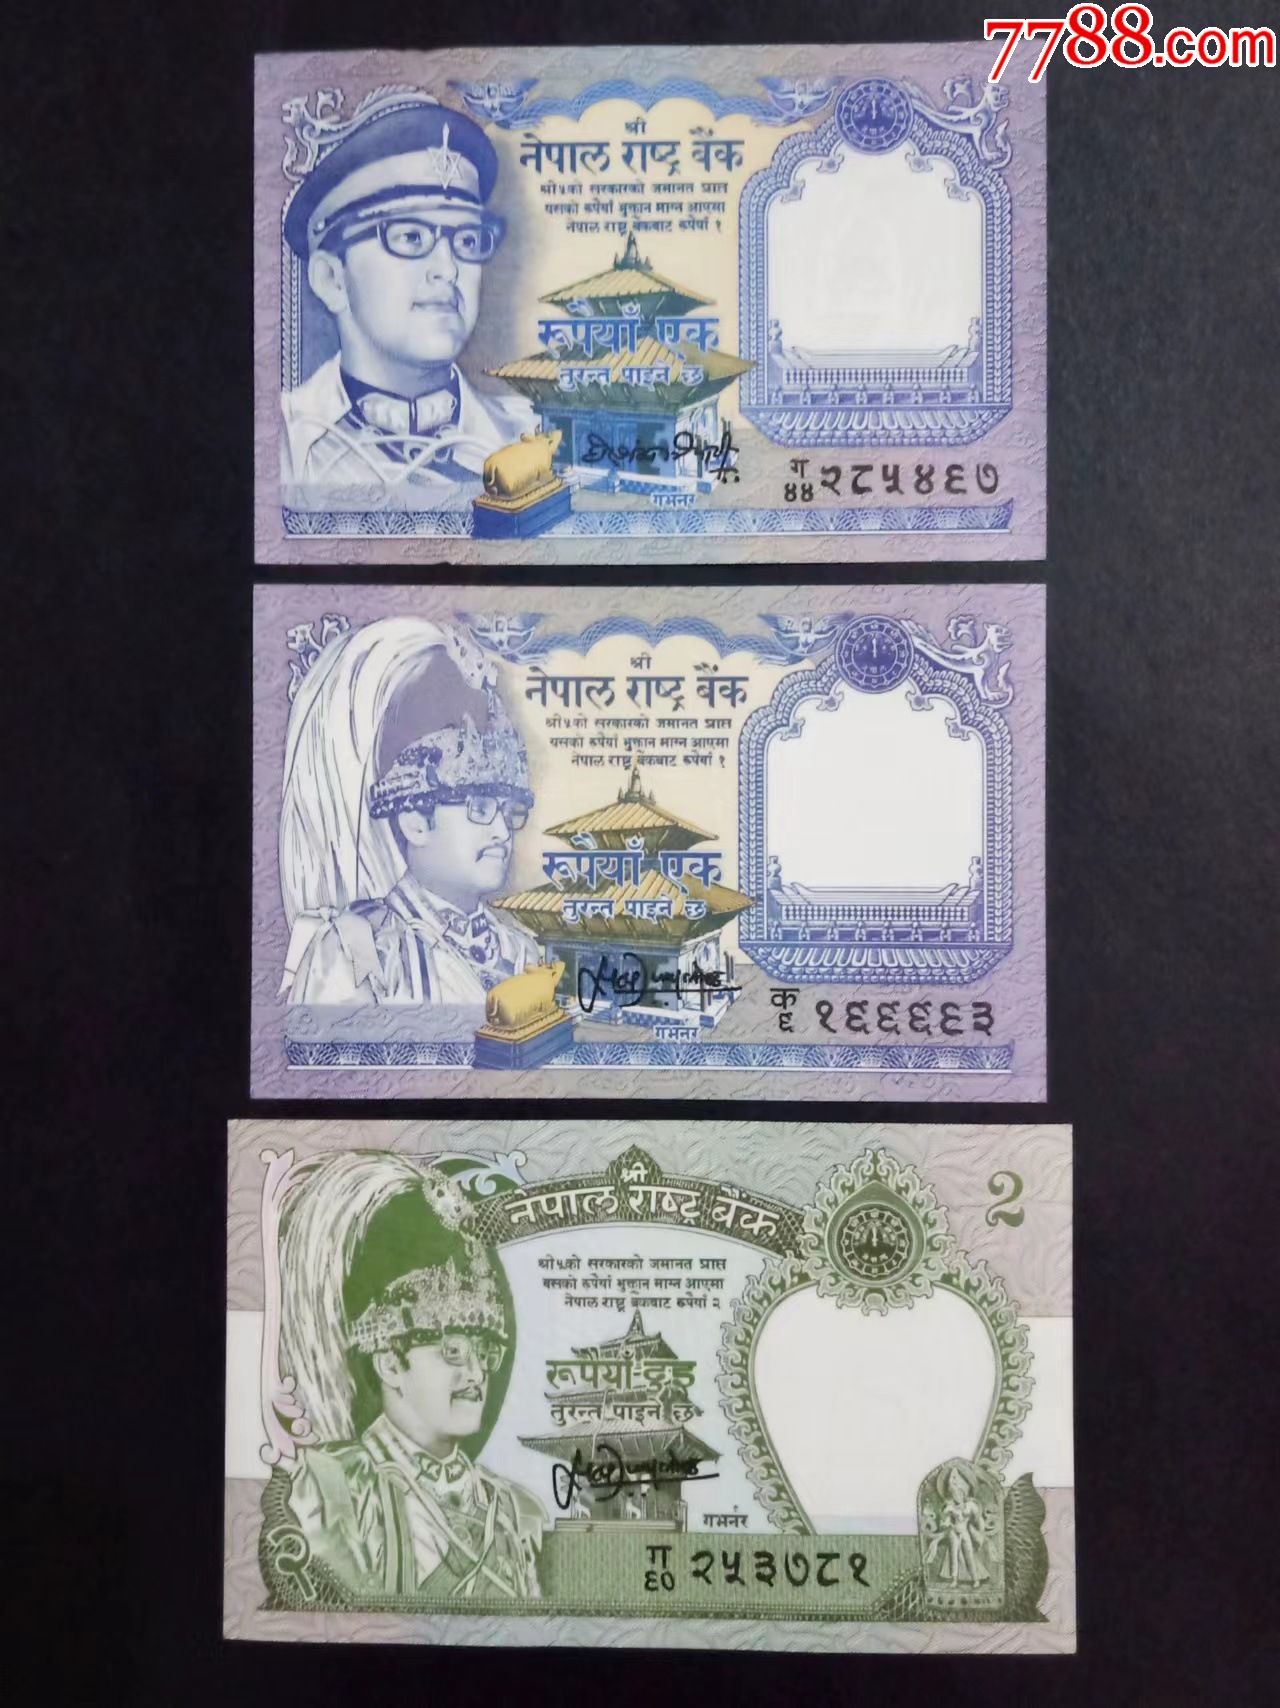 【每日一币】 尼泊尔卢比，代号是NPR，是尼泊尔的货币单位。现时与印度卢比挂钩，币值为印度卢比的三分之二。 尼泊尔中央银行副行长钦塔马尼2016年6月17日说，中国首次为尼泊尔印刷的纸币质量更高，色彩